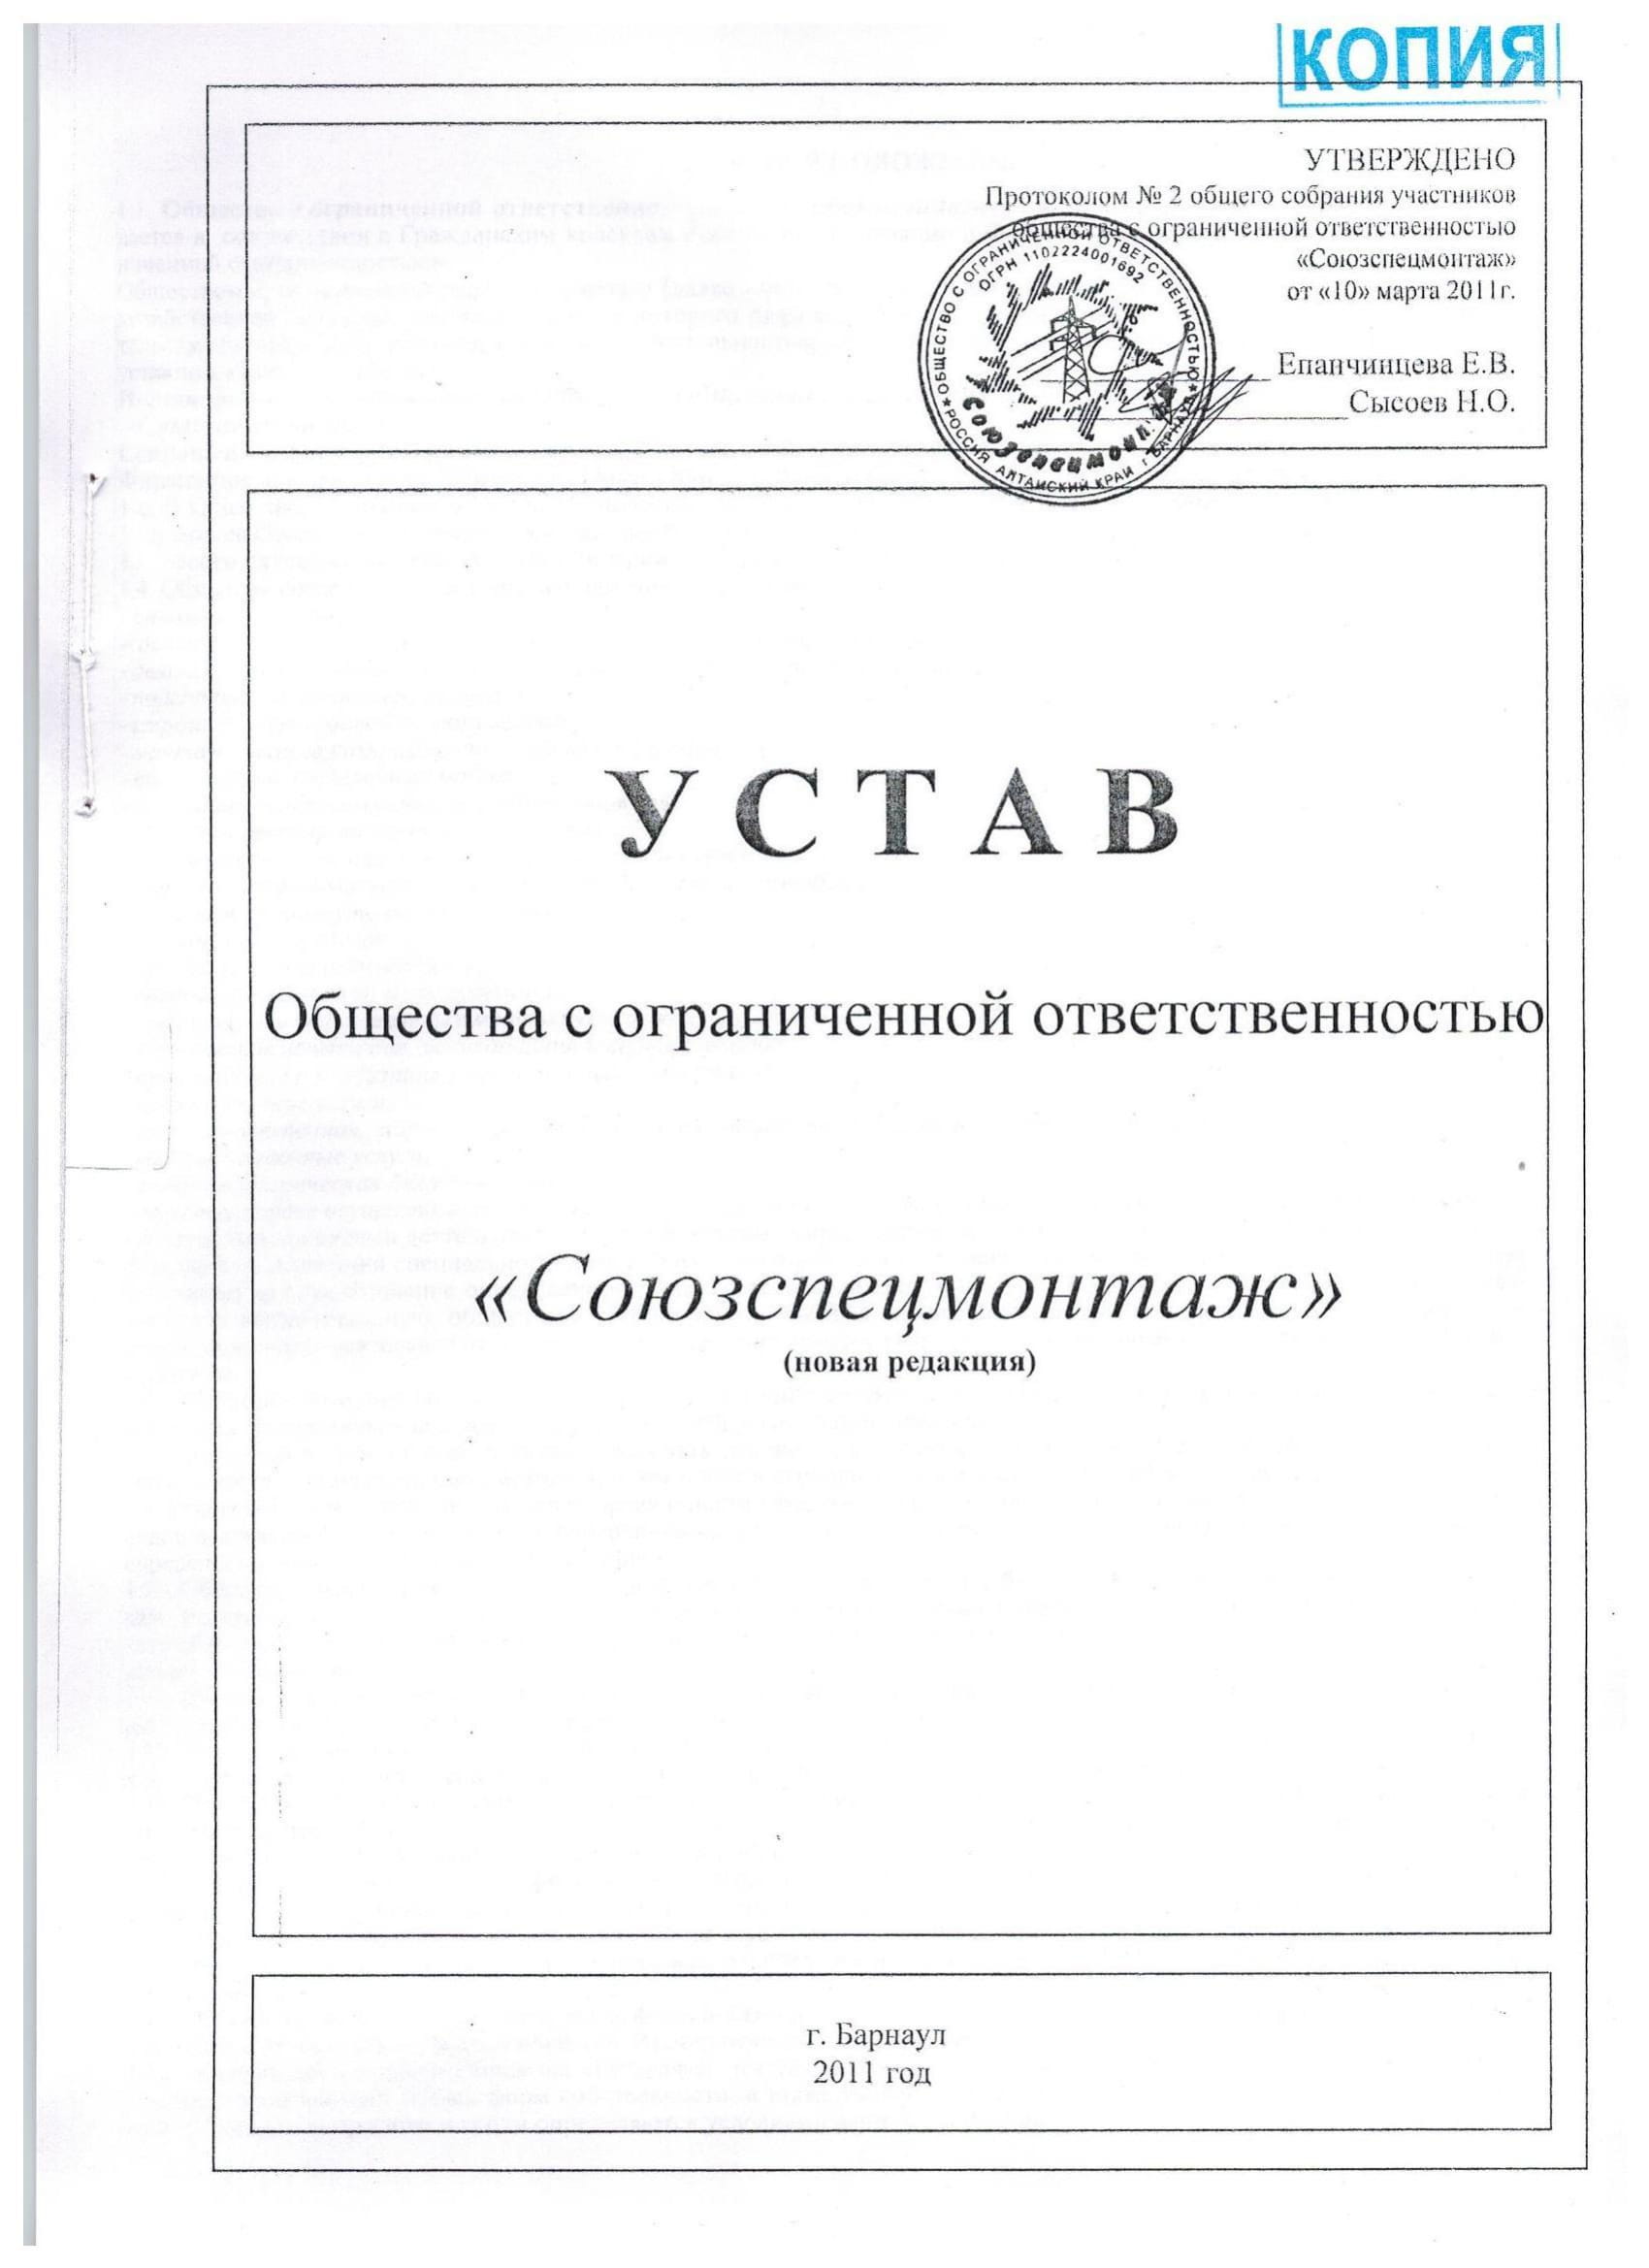 Ustav Soyuzspecmontazh 1